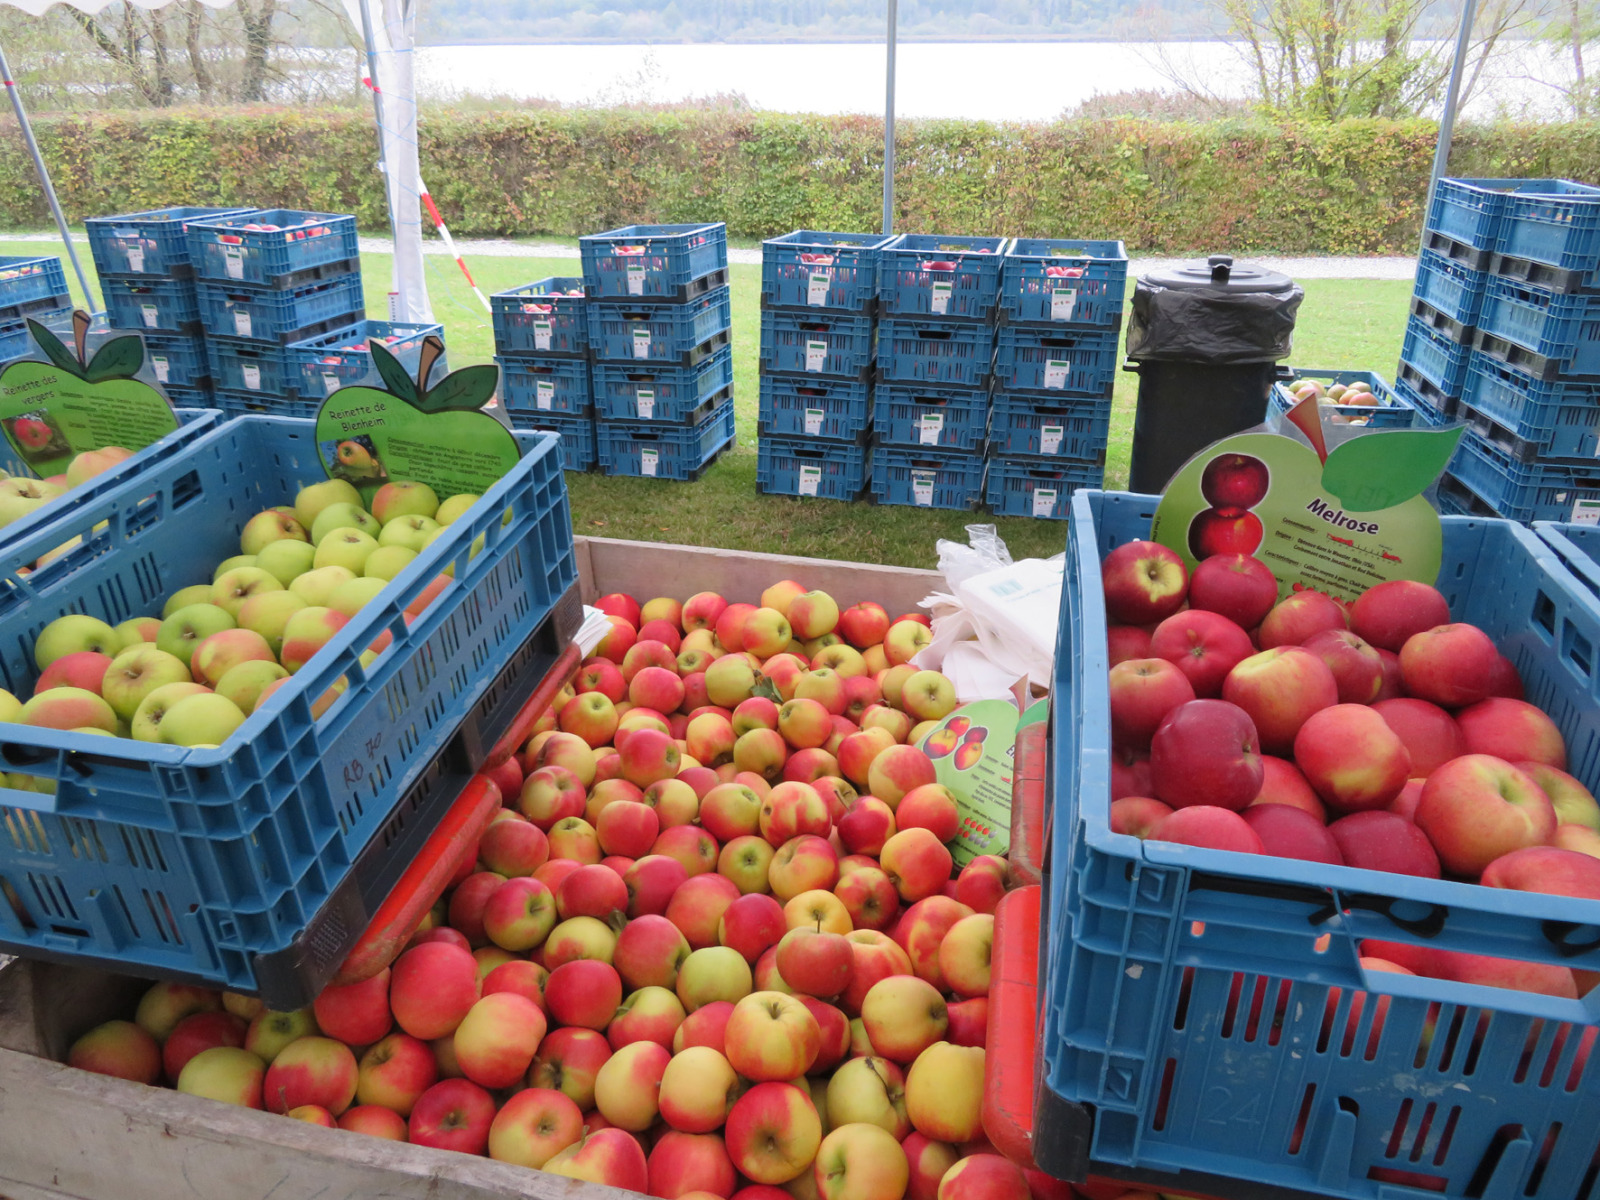 Caisses de pommes - Foire aux pommes de Virelles - Chaque année en octobre près de Chimay